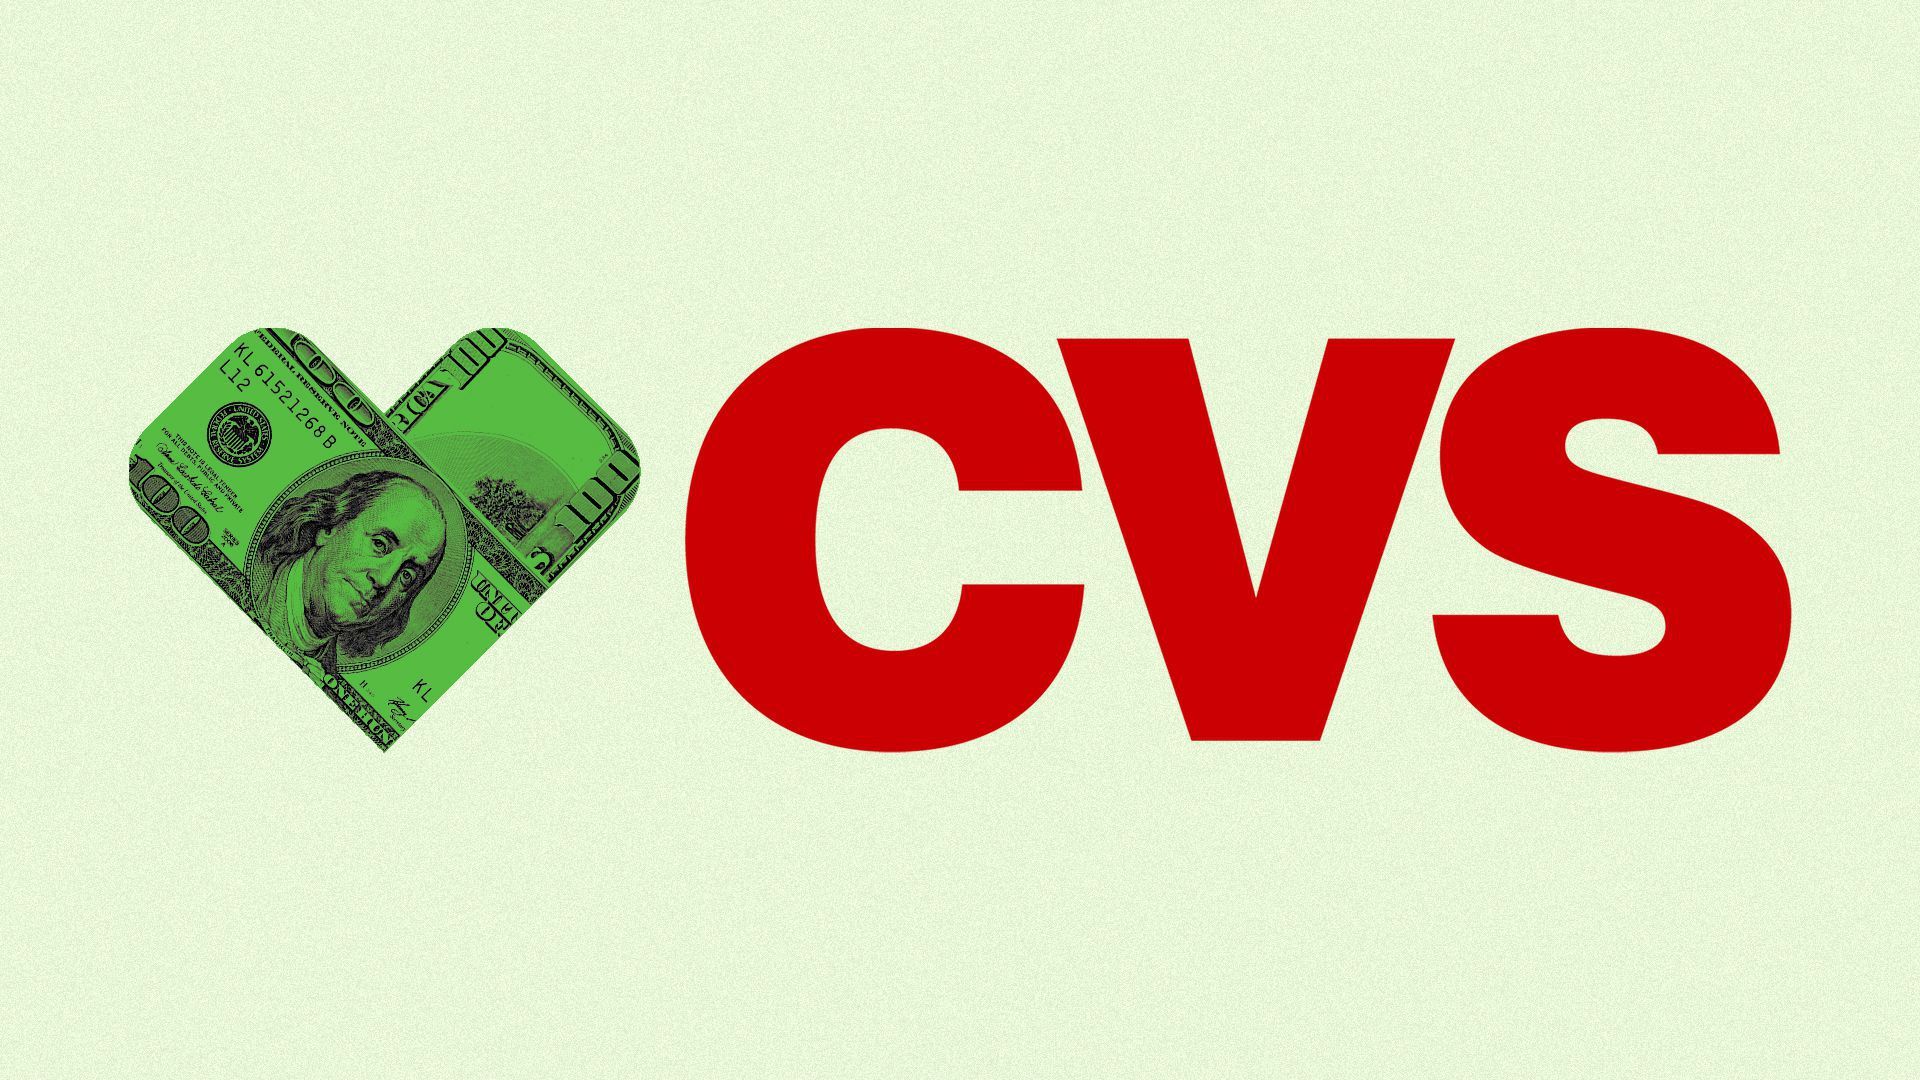 CVS logo with money bandage icon